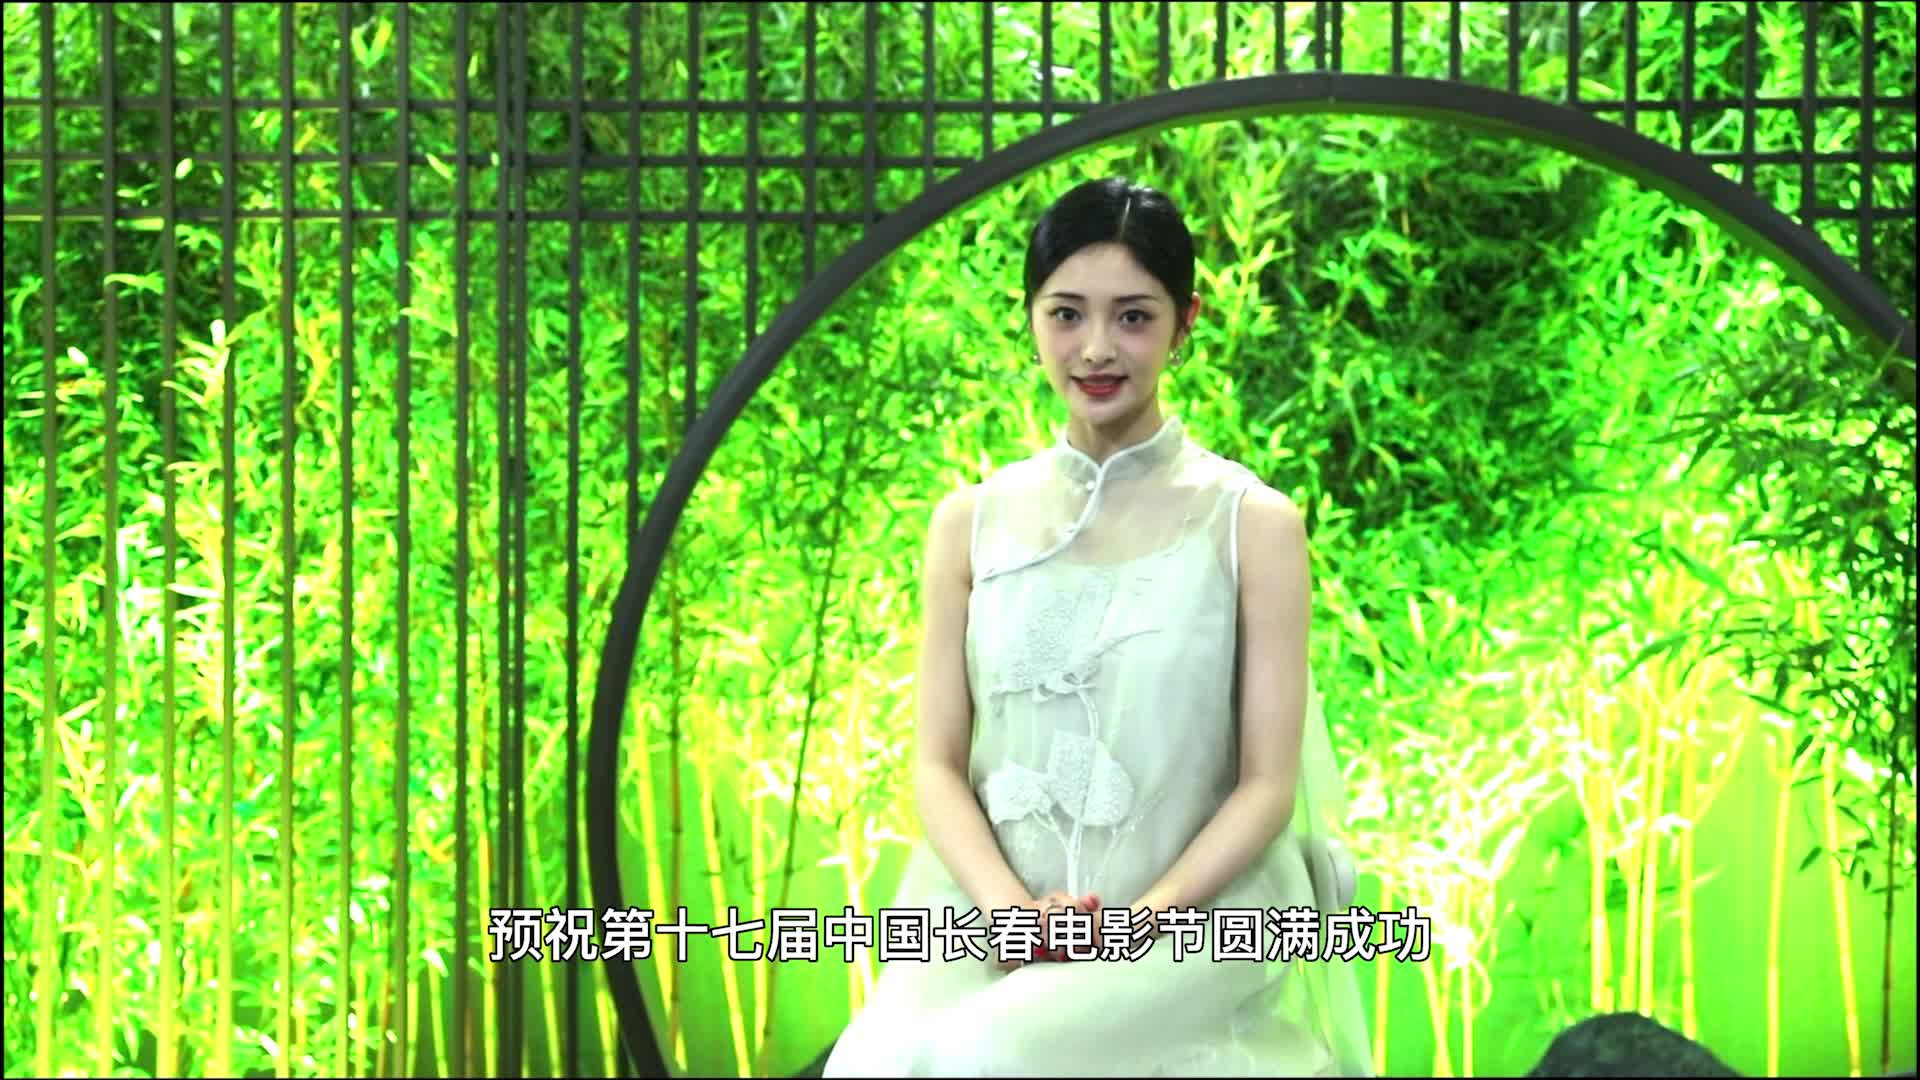 周洁琼为中国长春电影节三十周年送上祝福